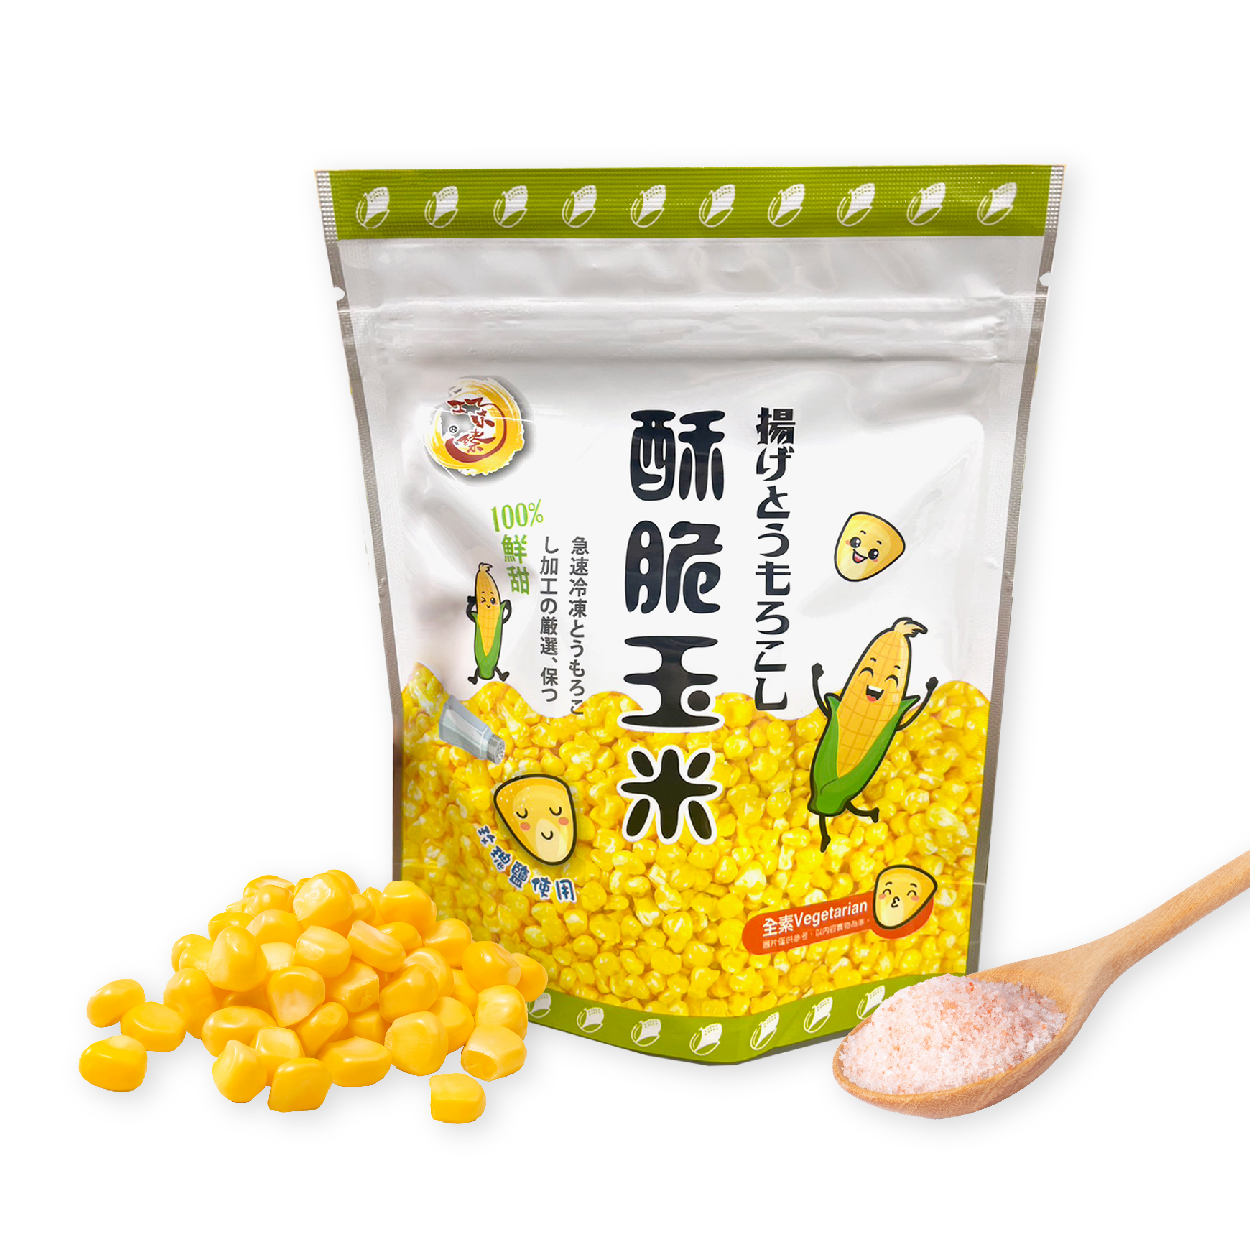 巧味臻 酥脆玉米 採用獨家技術 保留原型玉米粒